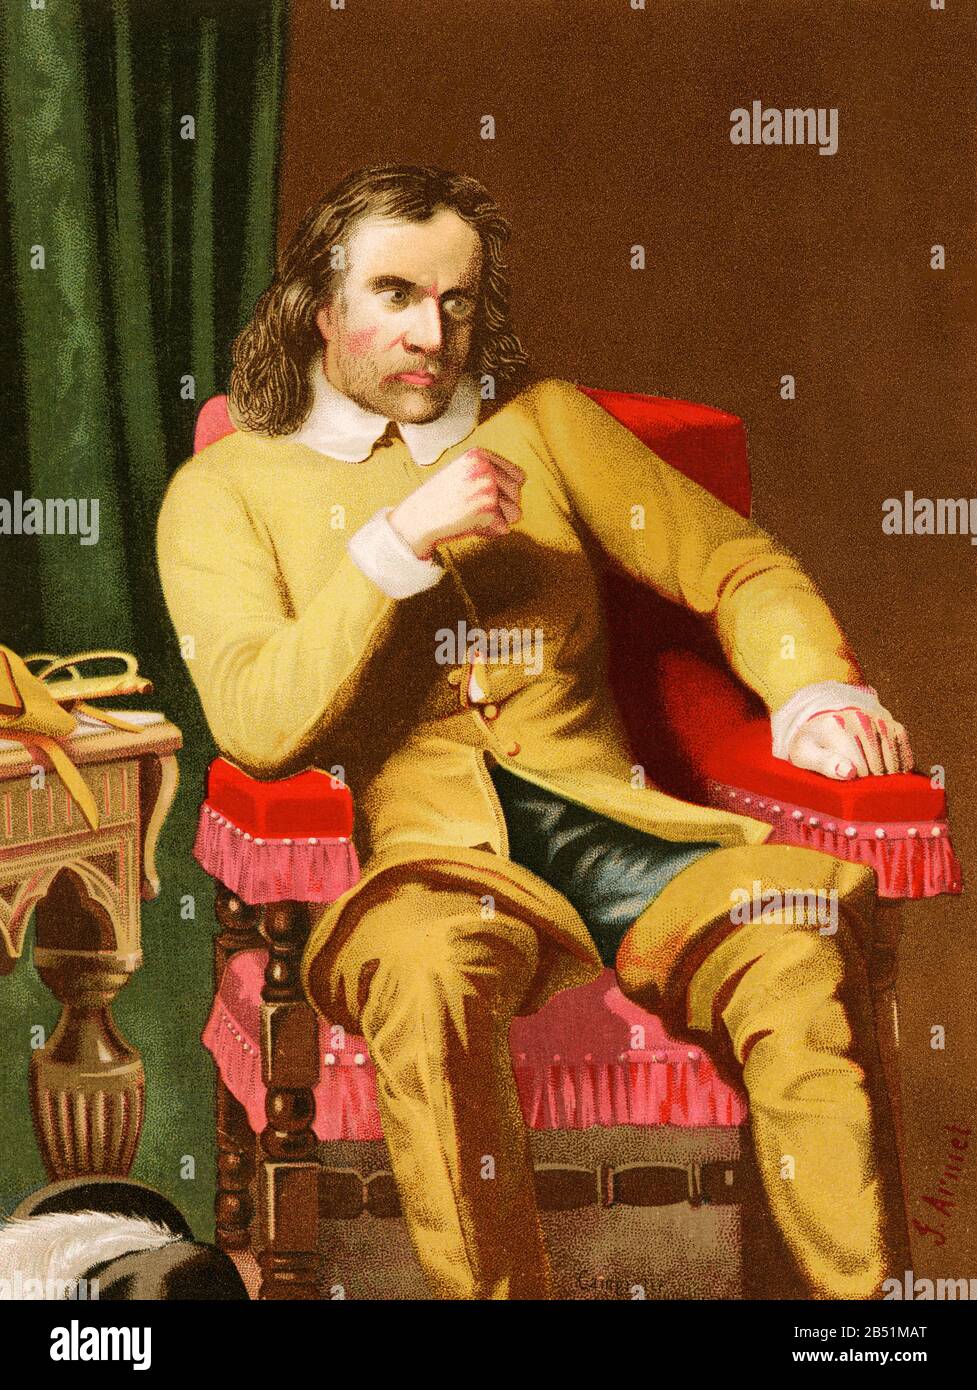 Vecchio ritratto litografico a colori. Oliver Cromwell (Huntingdon 1599 - Londra 1658), leader politico e militare inglese. Ha trasformato l'Inghilterra in un repub Foto Stock